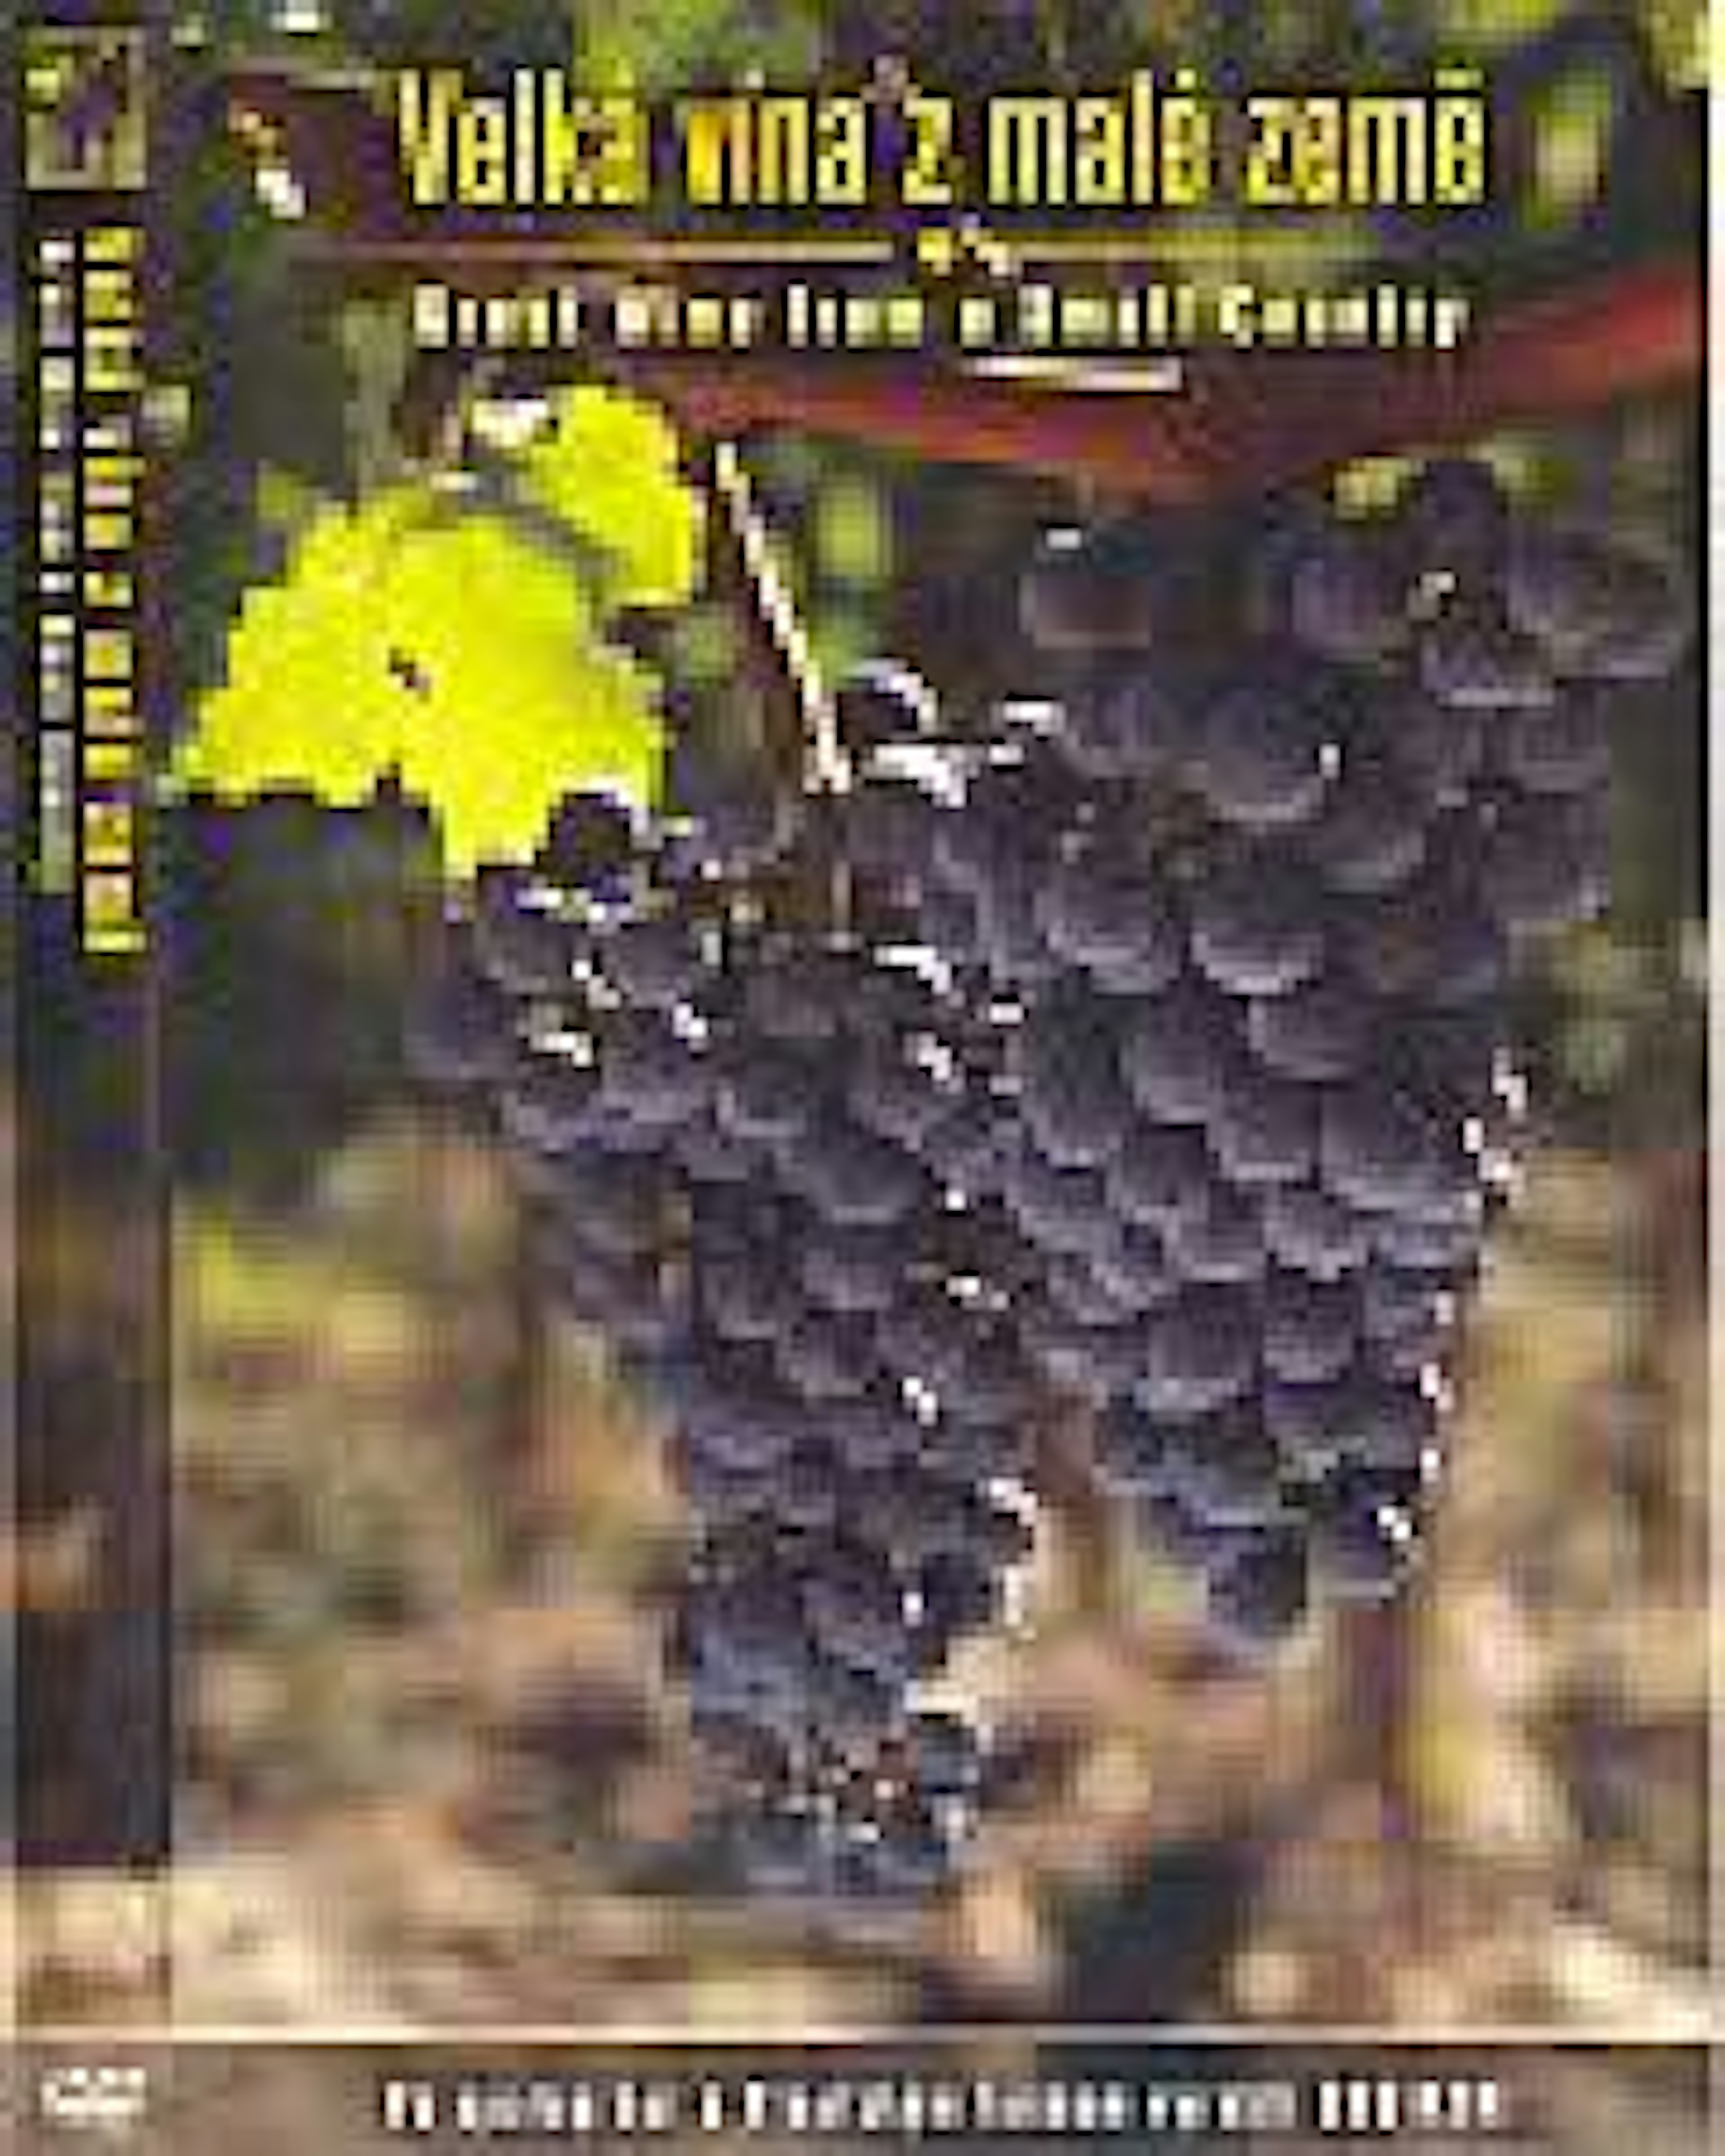 DVD "Velká vína z malé země"